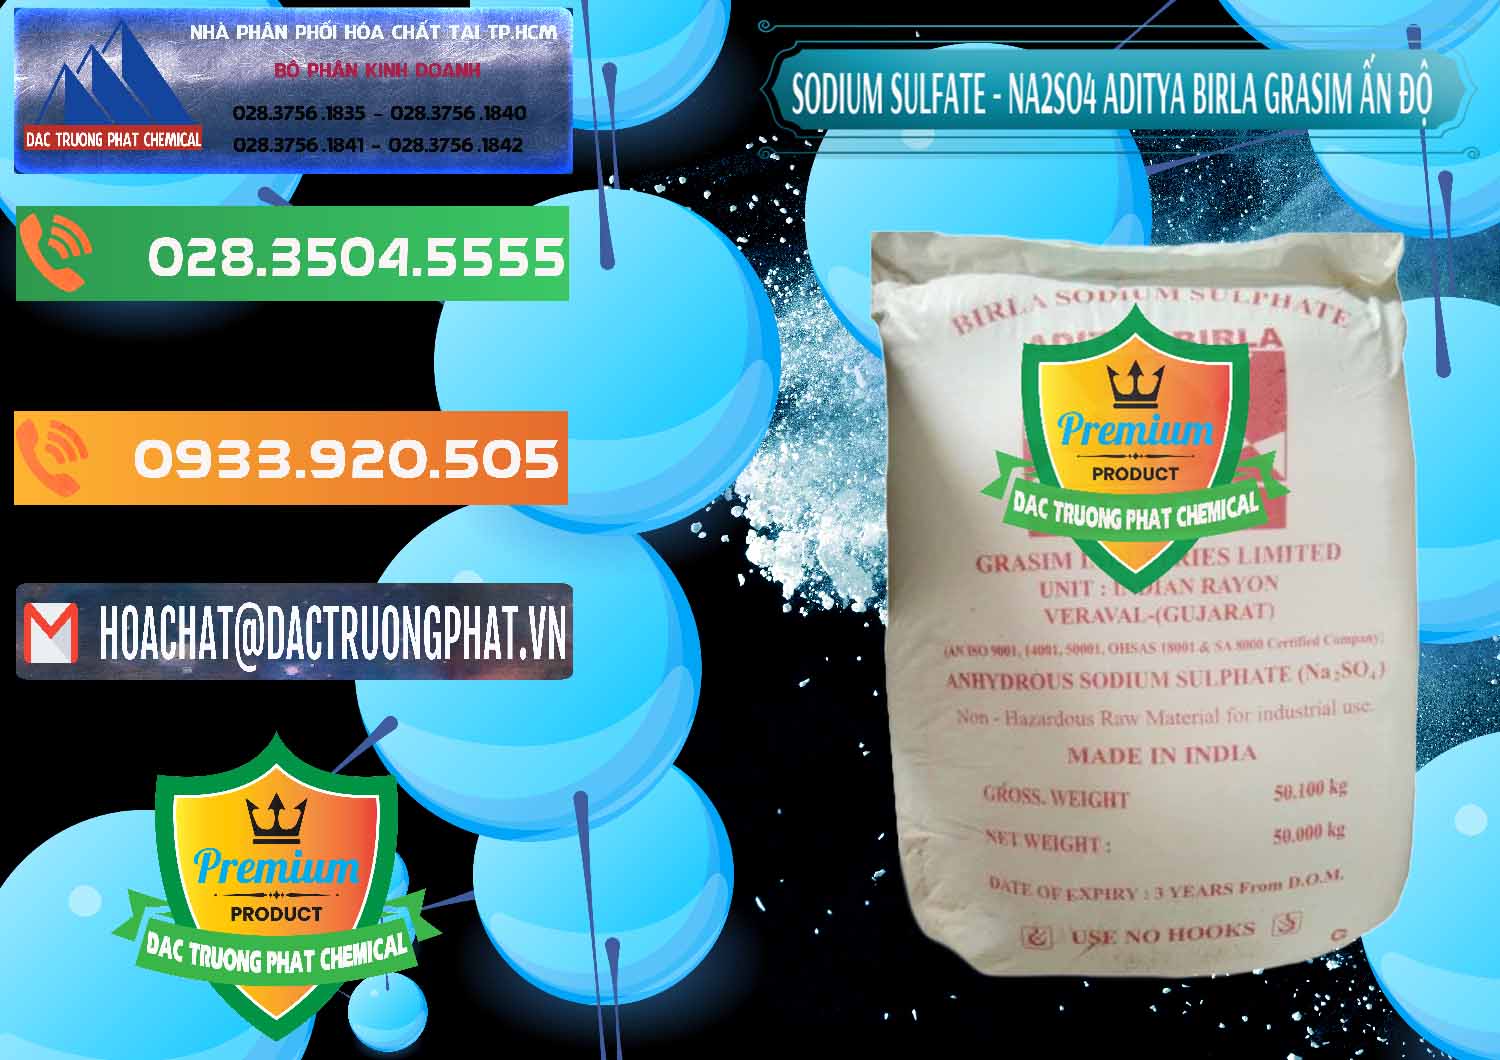 Cty phân phối ( bán ) Sodium Sulphate - Muối Sunfat Na2SO4 Grasim Ấn Độ India - 0356 - Bán và cung cấp hóa chất tại TP.HCM - hoachatxulynuoc.com.vn